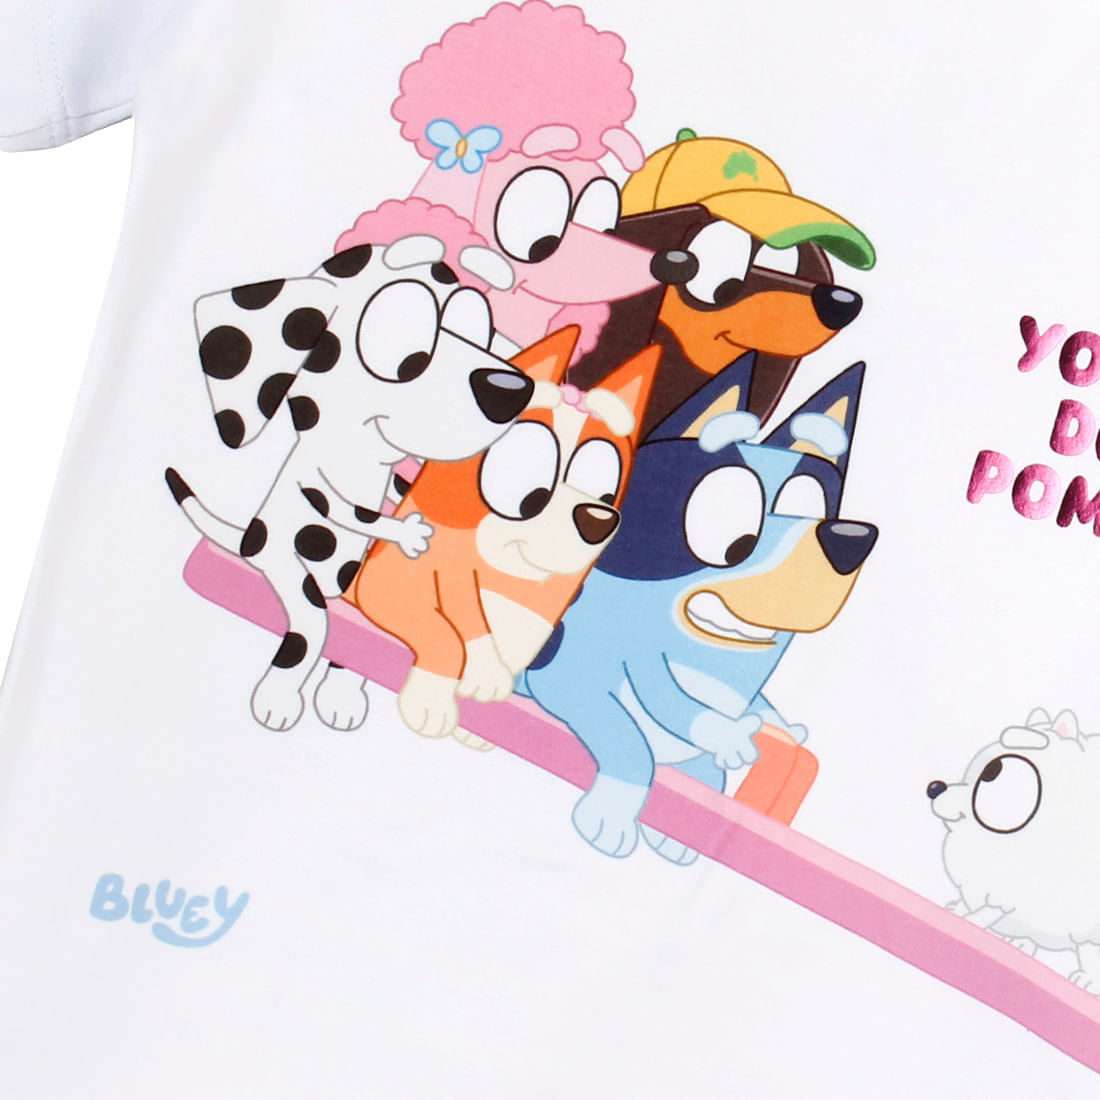 Camiseta Manga Corta Estampada Naranja Niños - Bluey Bluey - Pepe